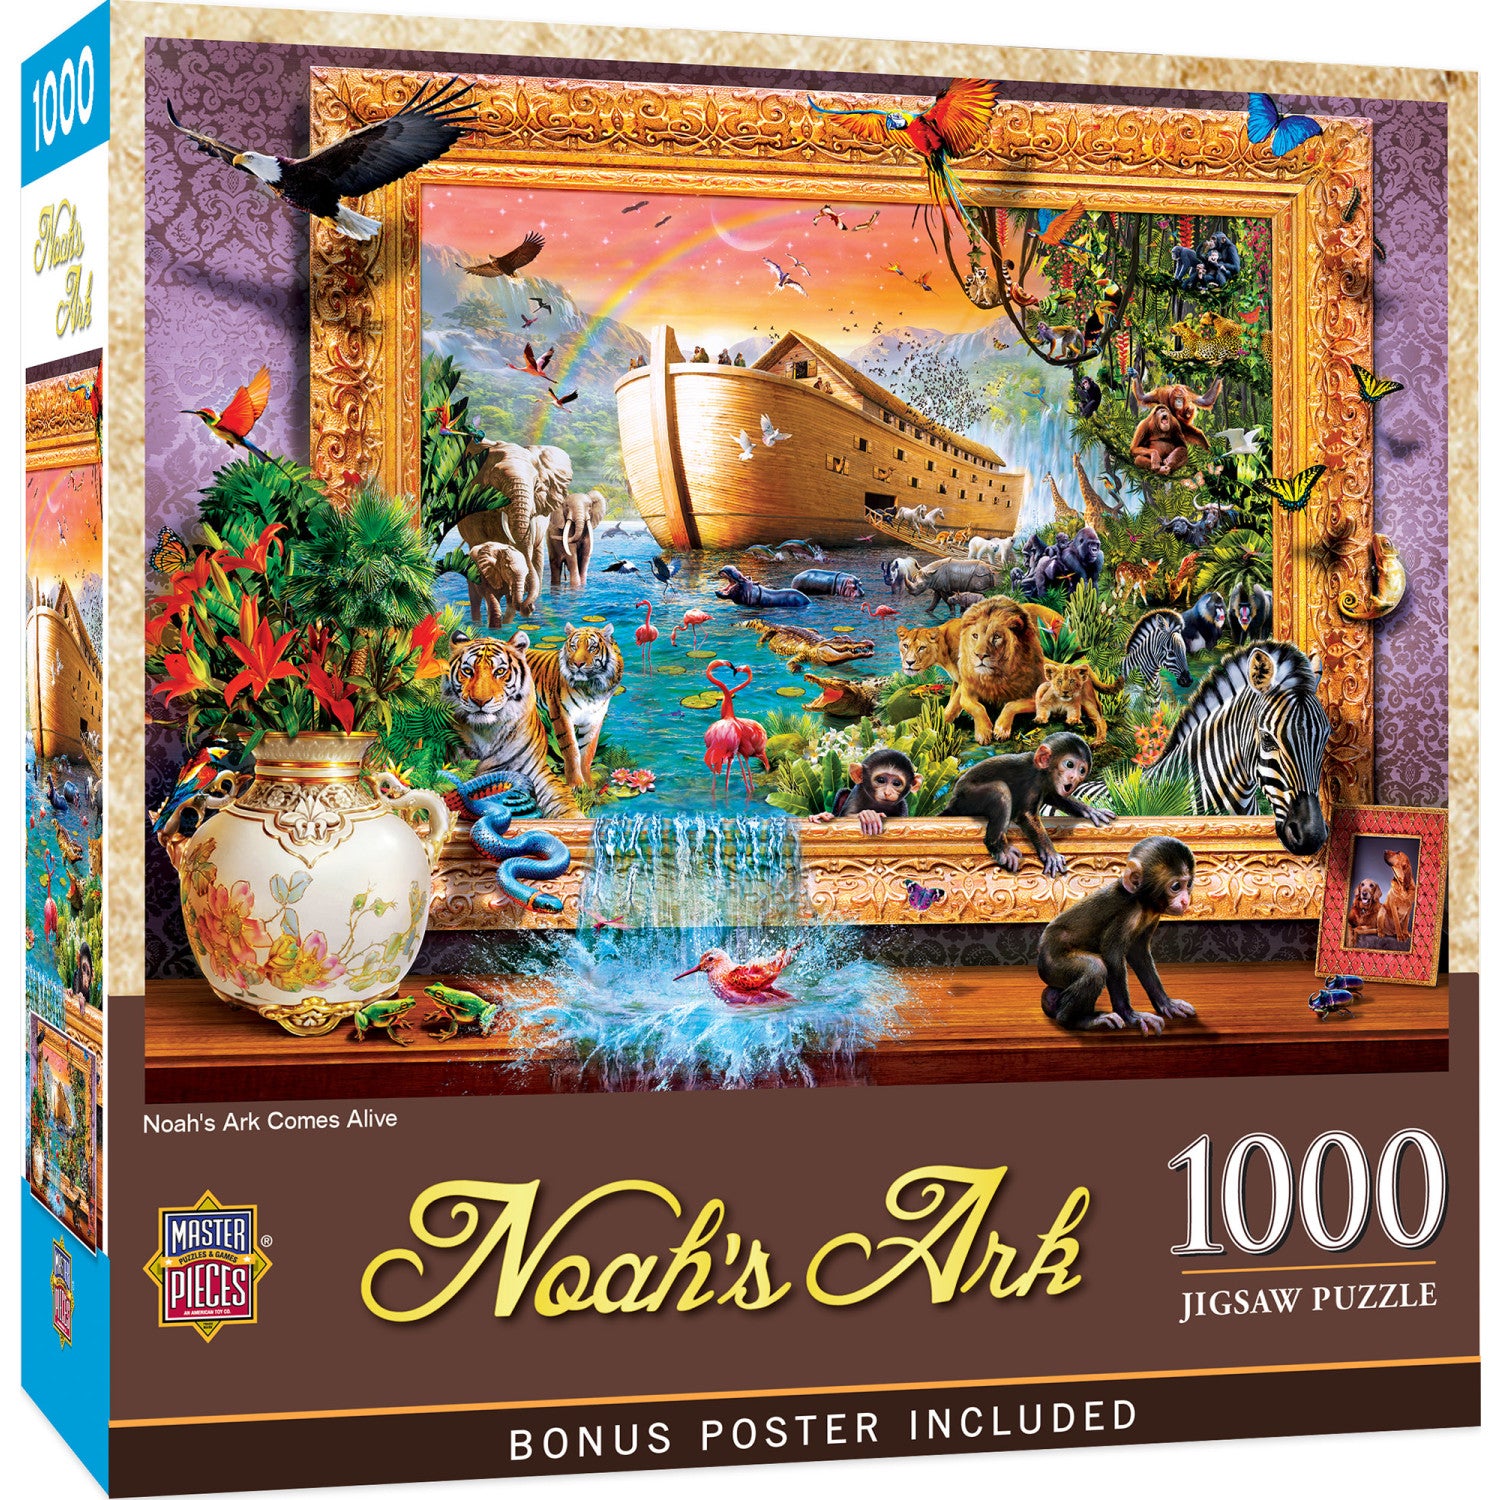 Noah's Ark Comes Alive - 1000 Piece Jigsaw Puzzle